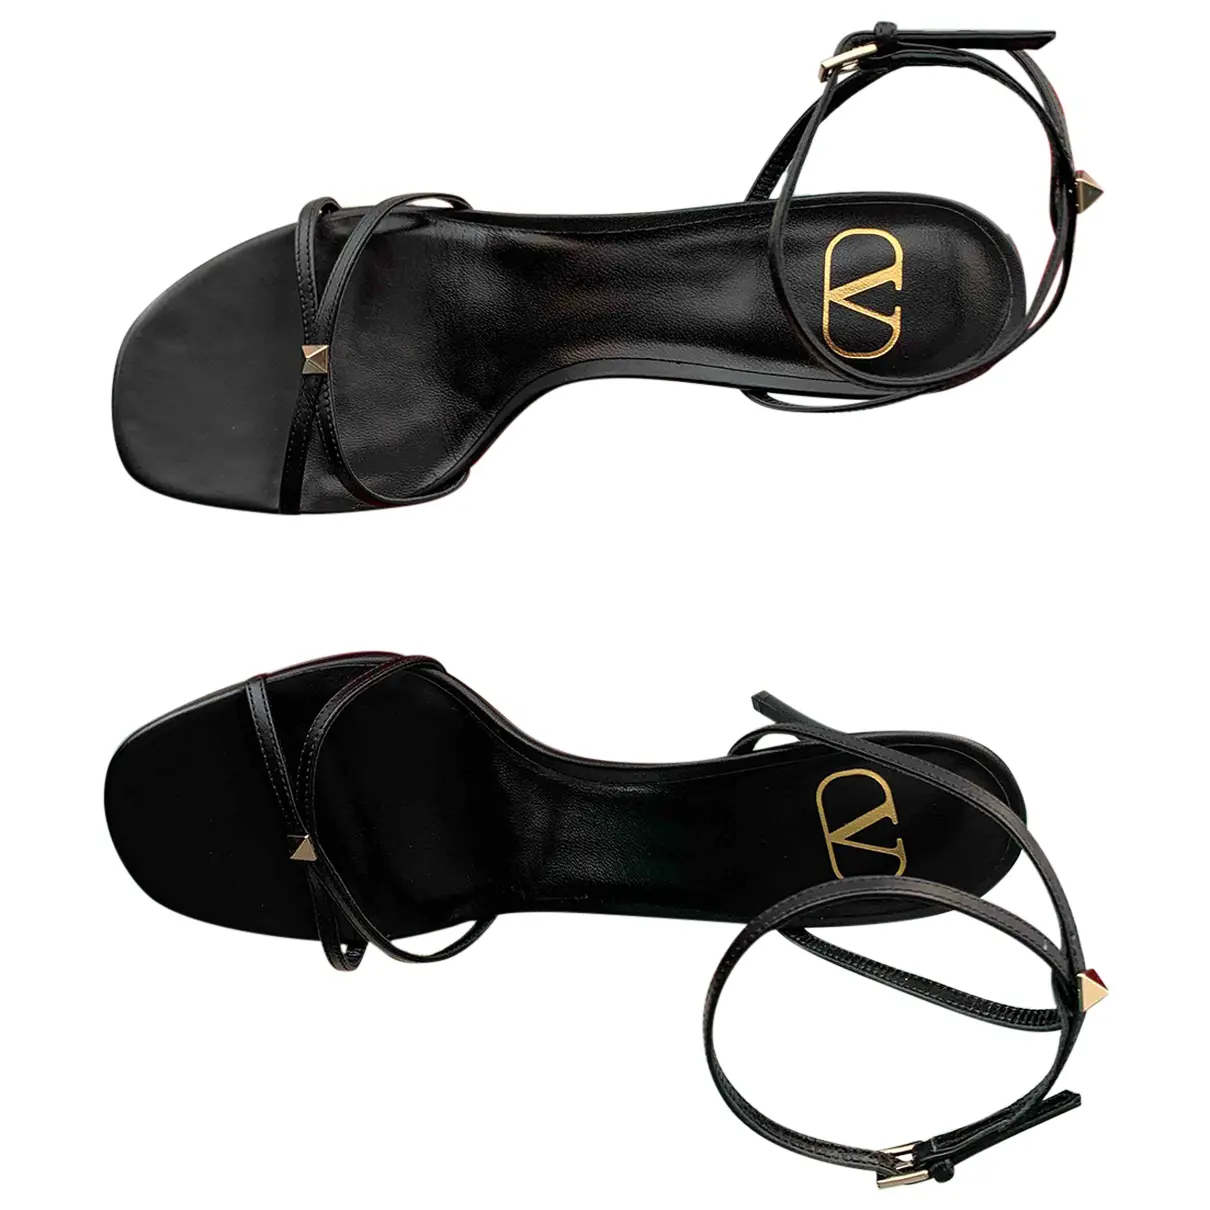 Buy Valentino Garavani Leather sandals online